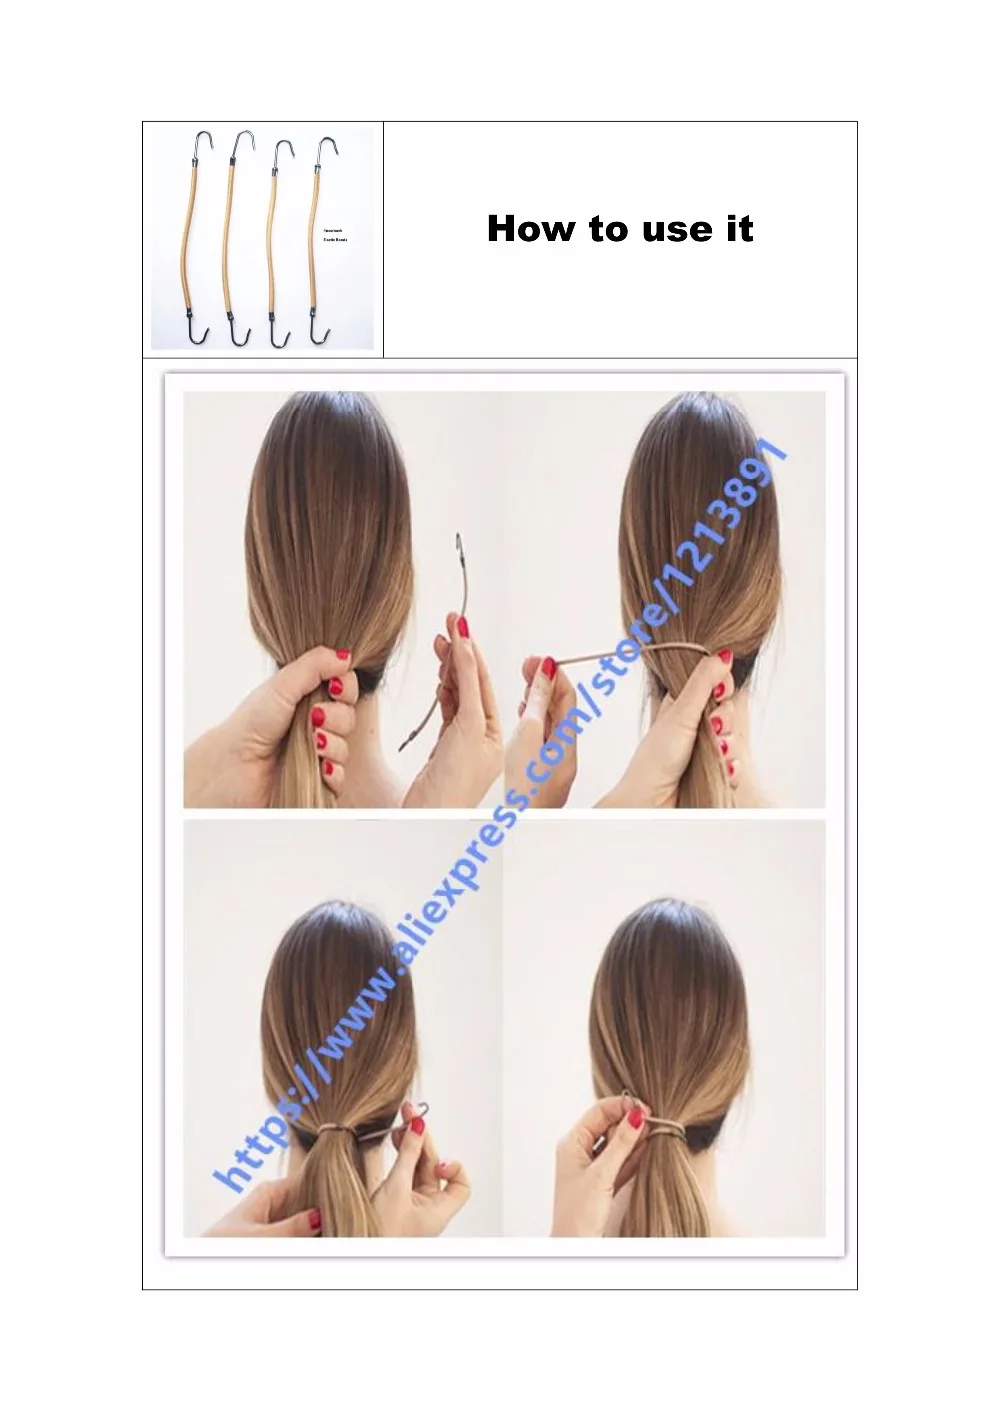 Инструменты для укладки волос updo fashion up аксессуары для волос комод для волос французский валик для Плетения КОС с волшебной завивкой волос Парикмахерская оплетка